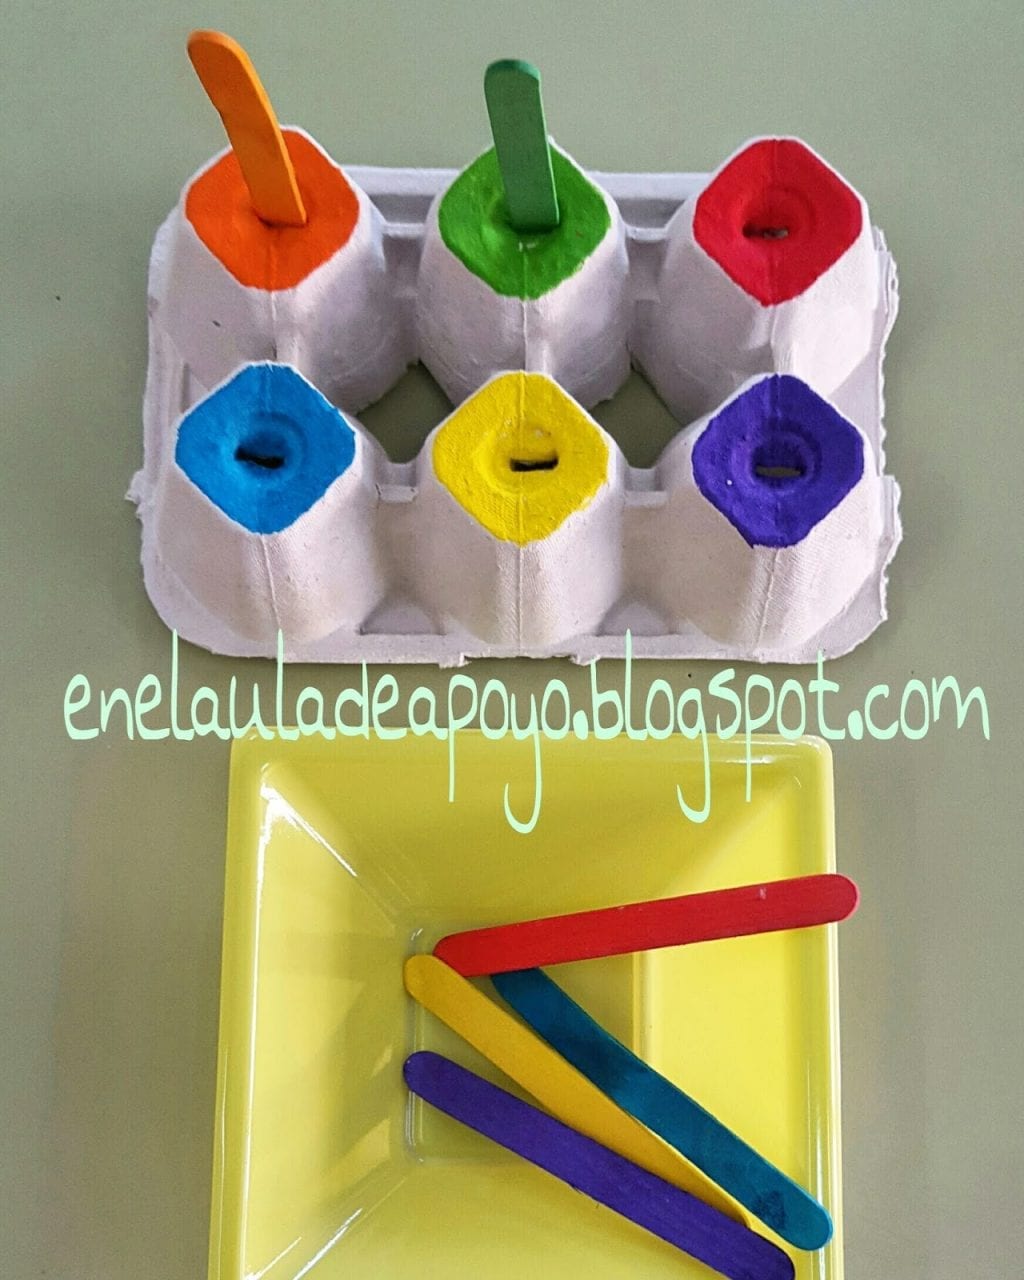 Caixa de ovos e palitos de cores